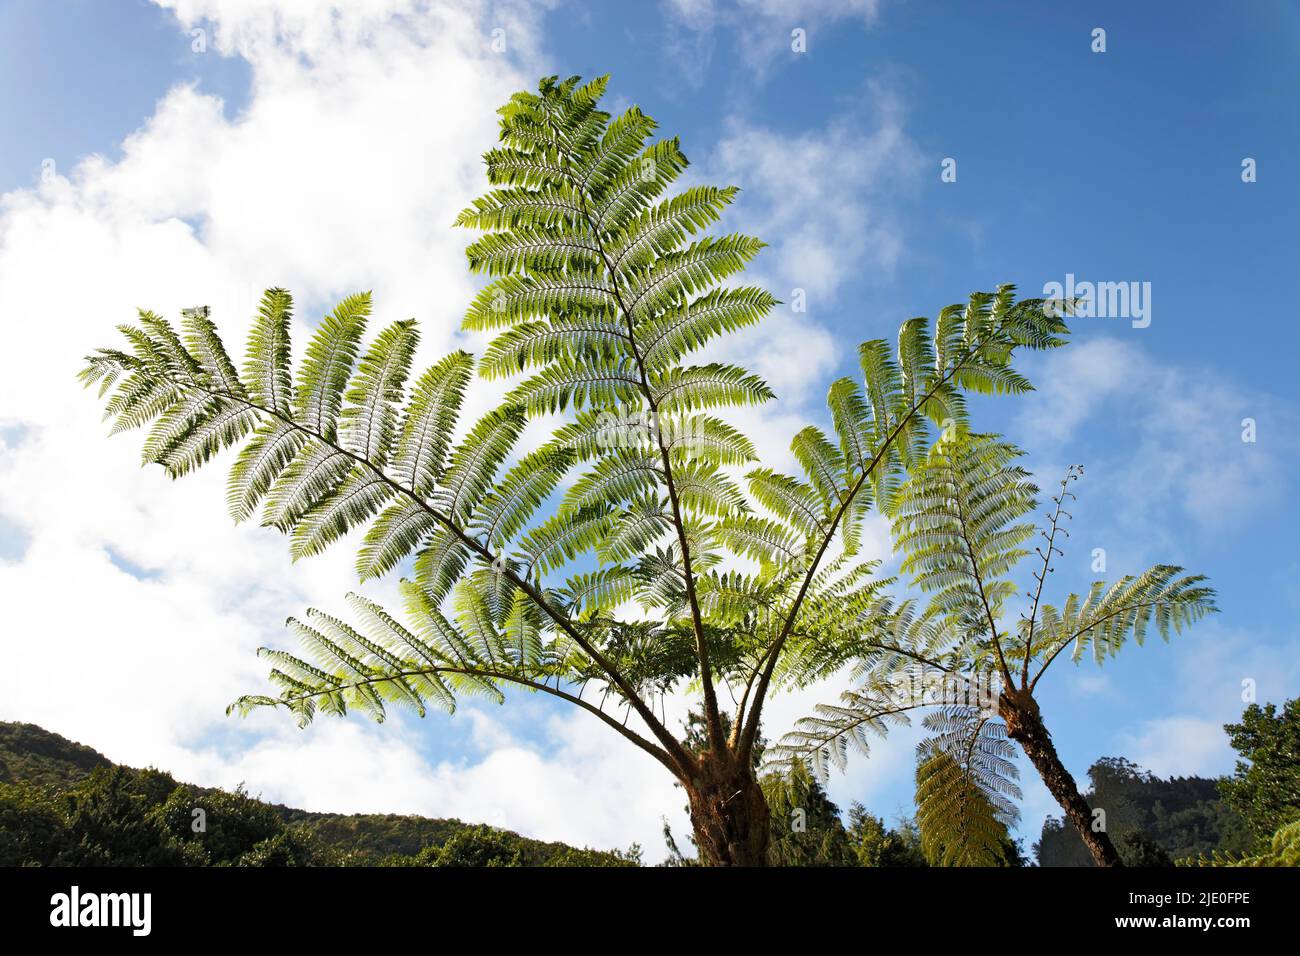 Tree fern (Cyathea spp.), Ribeiro Frio, Madeira, officially Autonomous Region of Madeira, Island, Archipelago of Macaronesia, Portugal Stock Photo